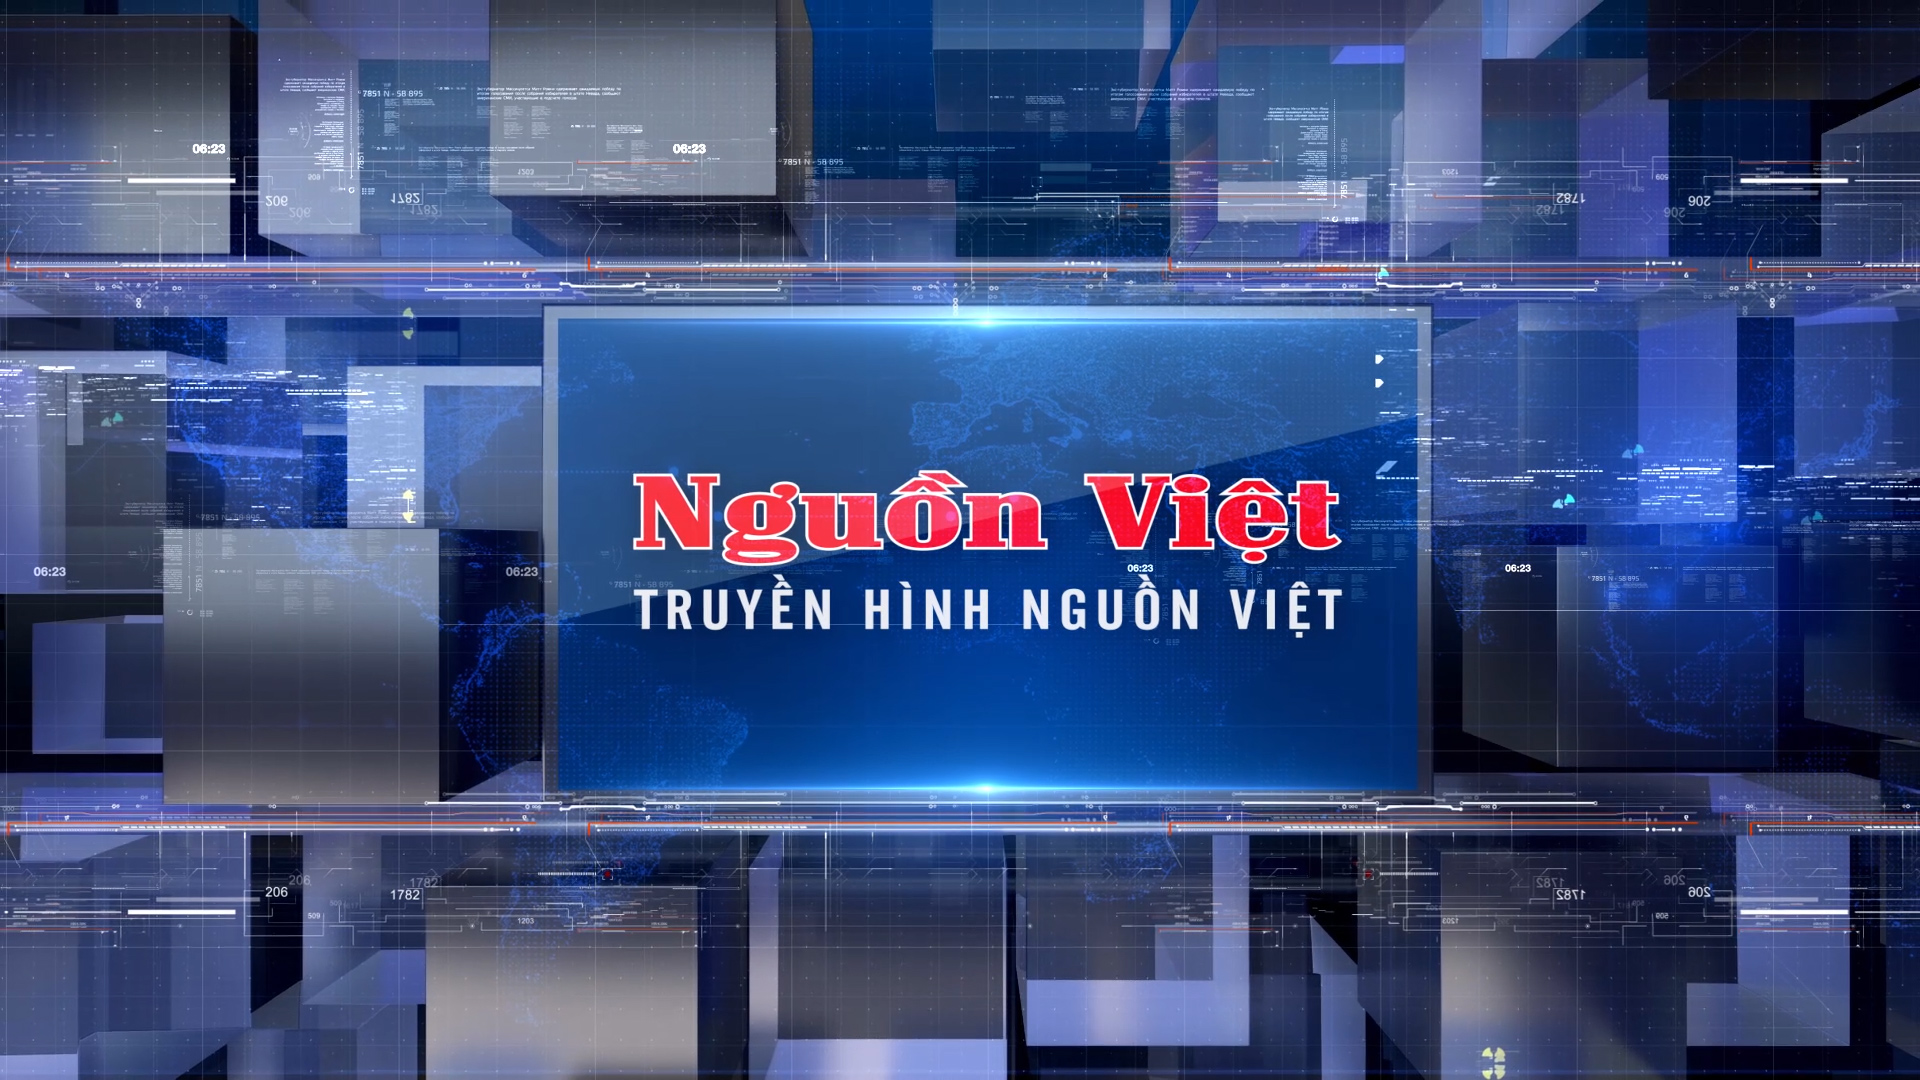 Truyền hình Nguồn Việt: Bài hát Việt Nam hòa thanh với năm châu